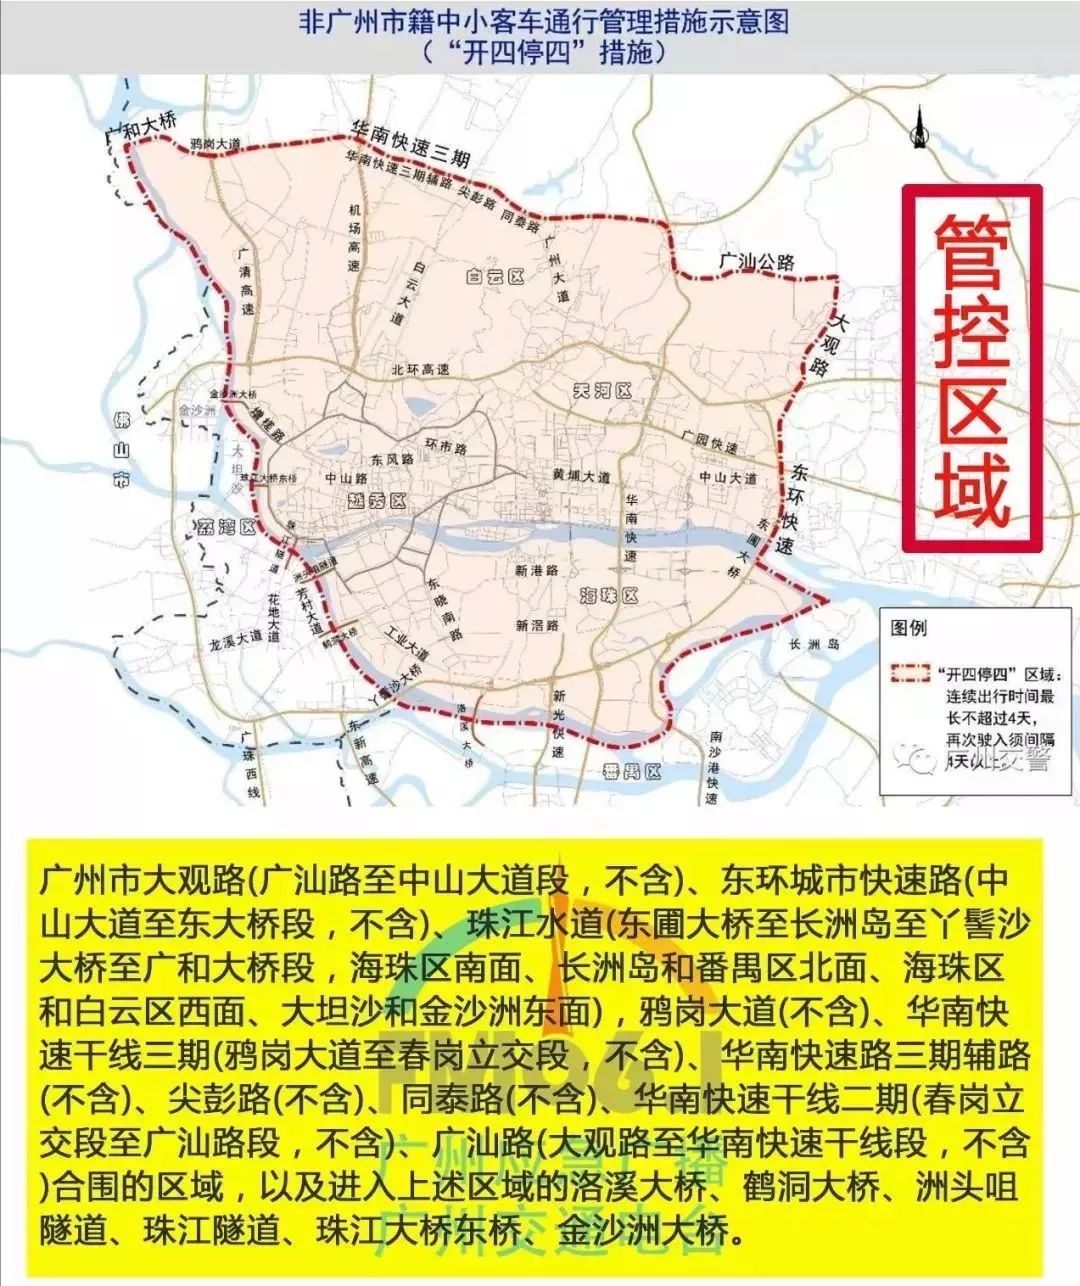 限行标志广州交警已在广州市管控区域边界及进入管控区域的主要道路